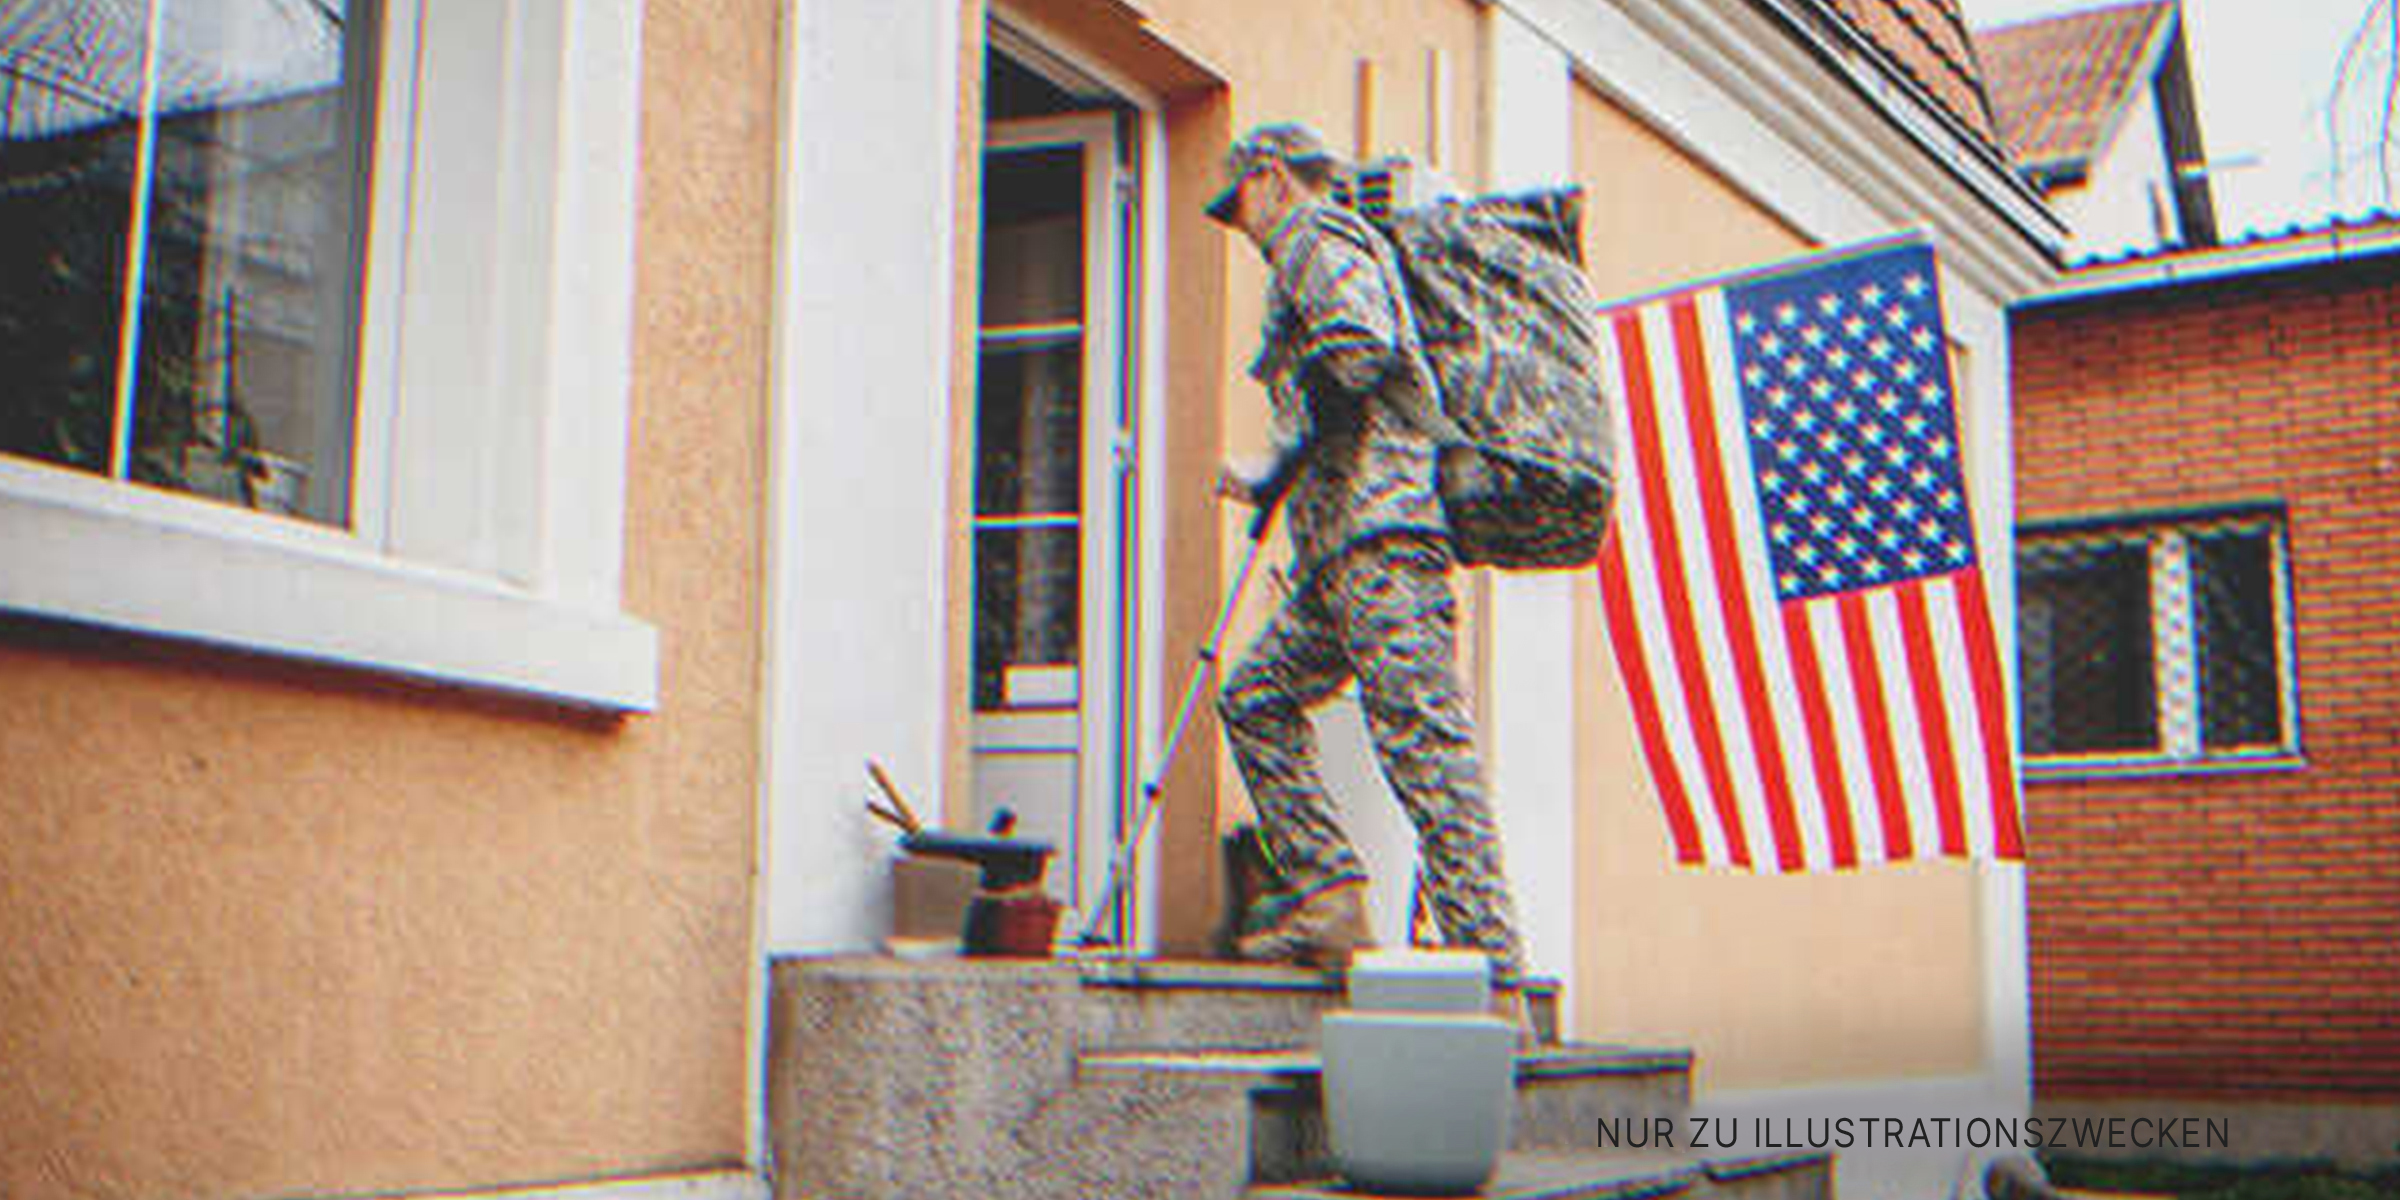 Ein verletzter Soldat betritt ein Haus. | Quelle: Getty Images